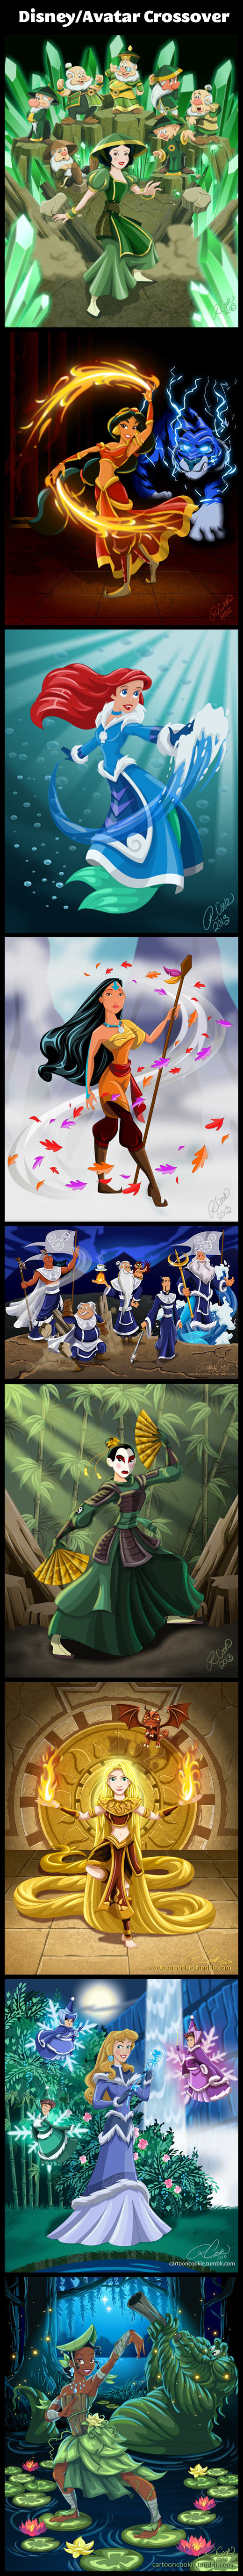 Disney/Avatar Crossover.